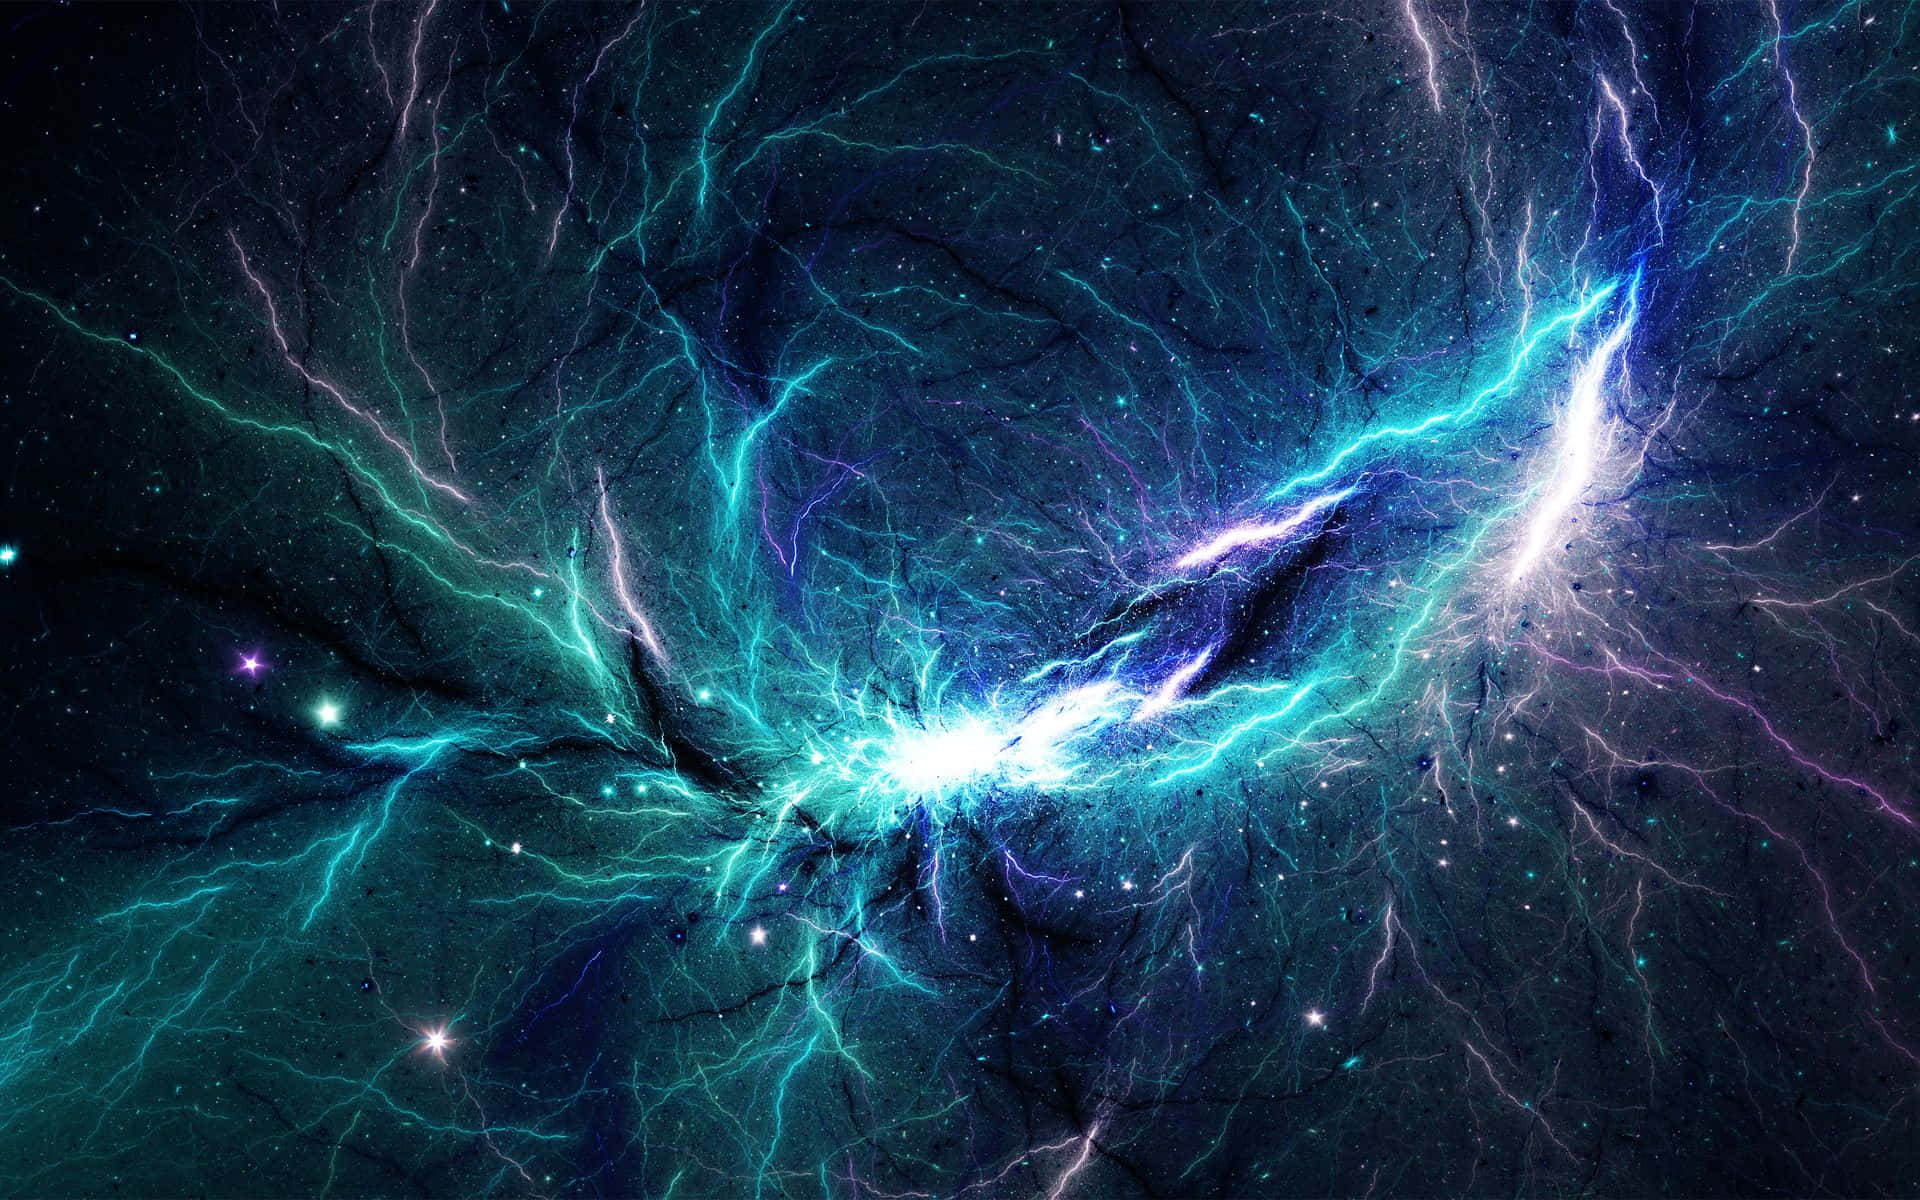 Maravillaastronómica De Una Nebulosa Espacial Fondo de pantalla